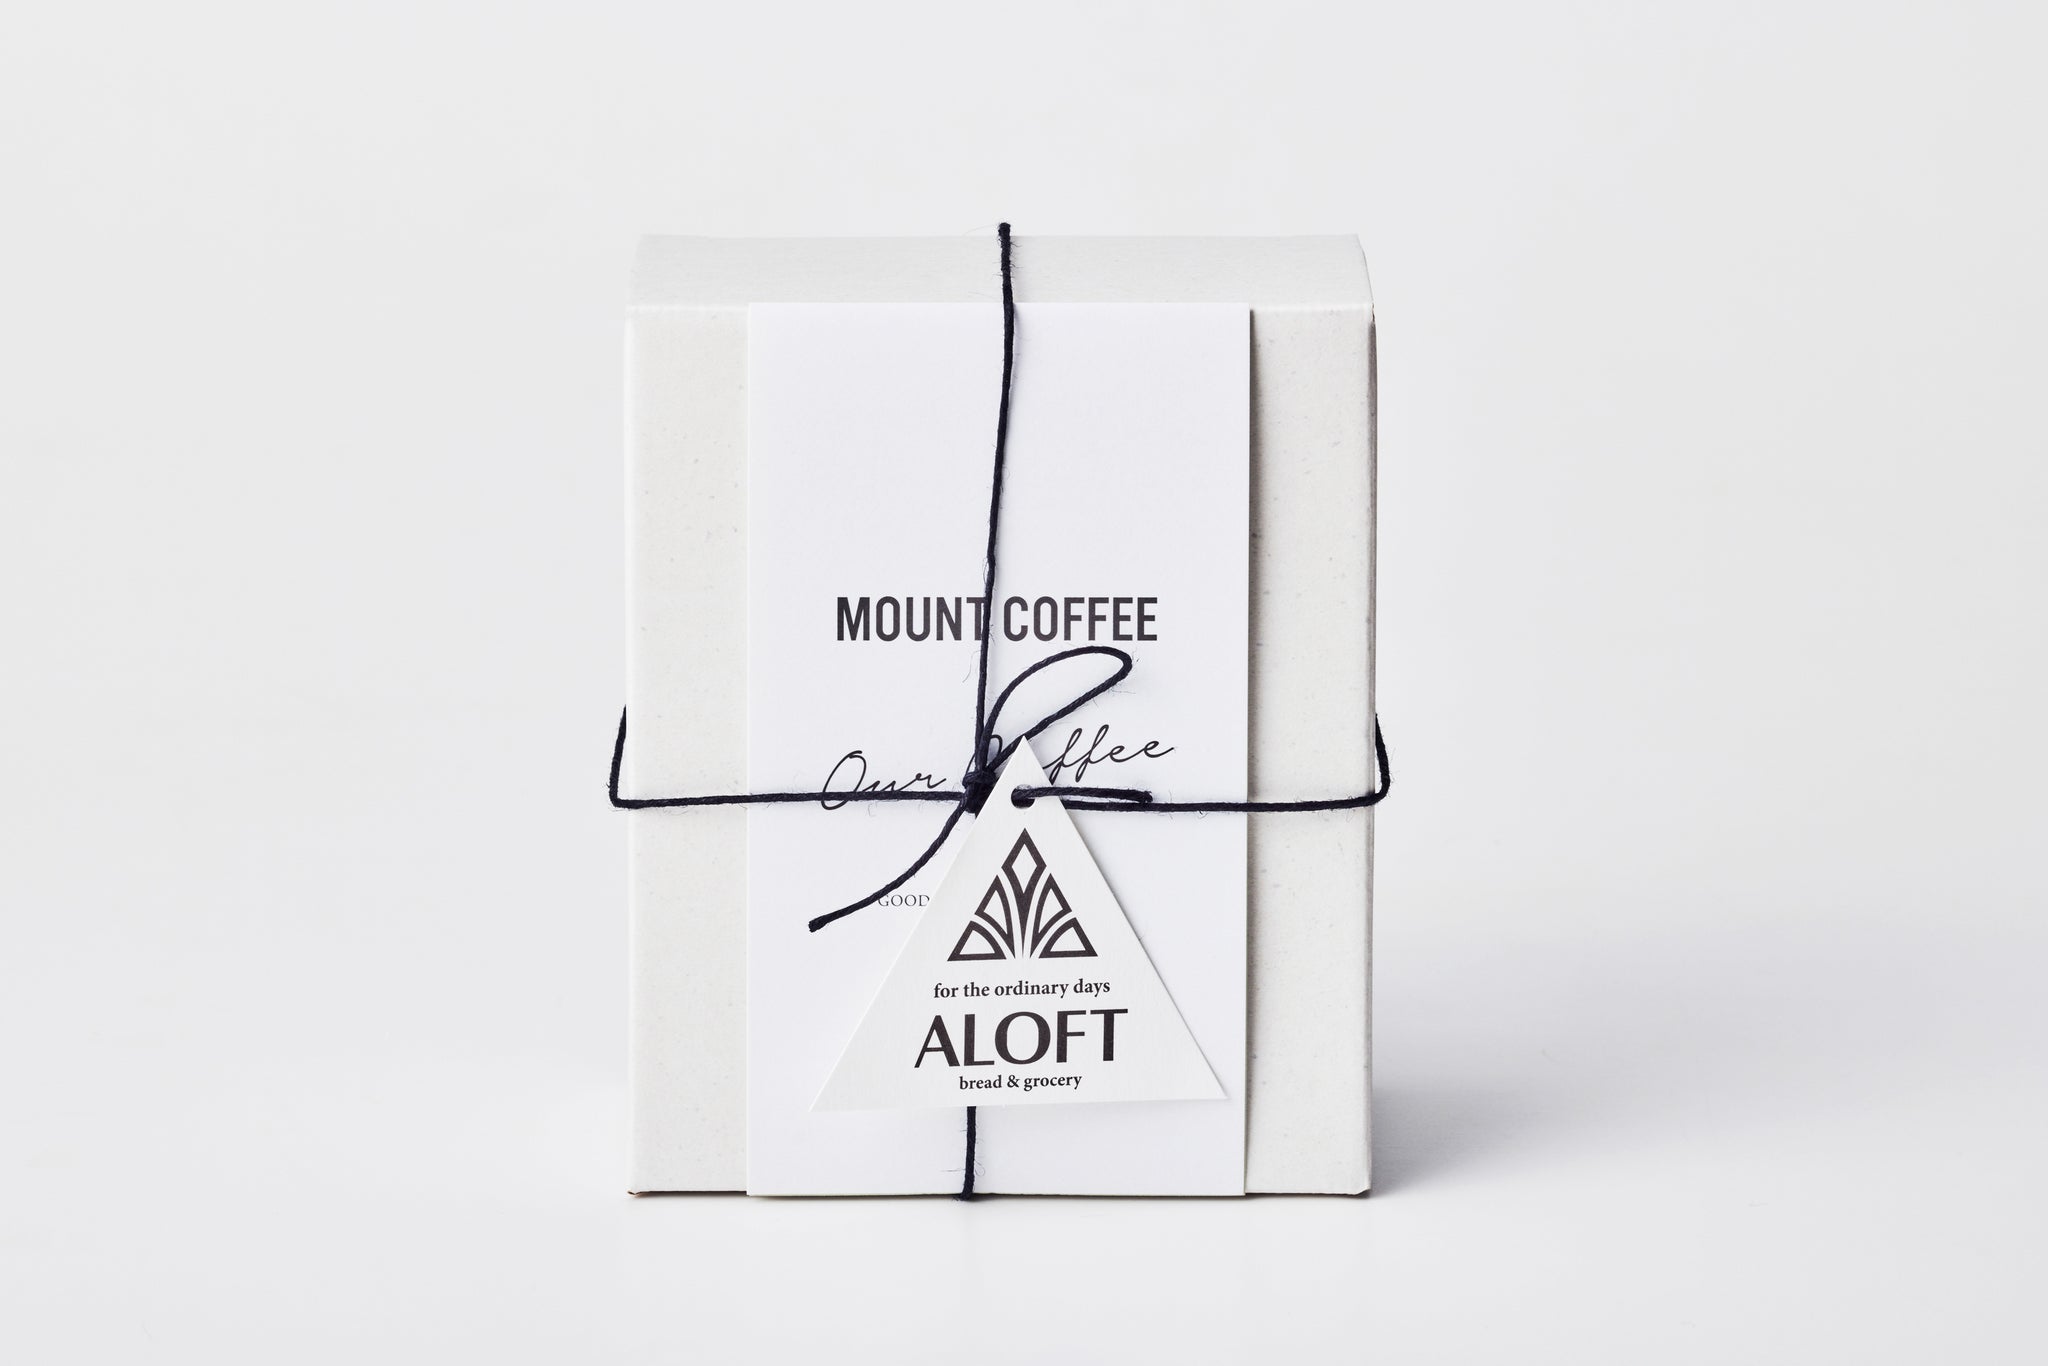 アロフトオリジナルブレンドコーヒー・ドリップバッグギフト・1箱 (2種×3個=6袋入)